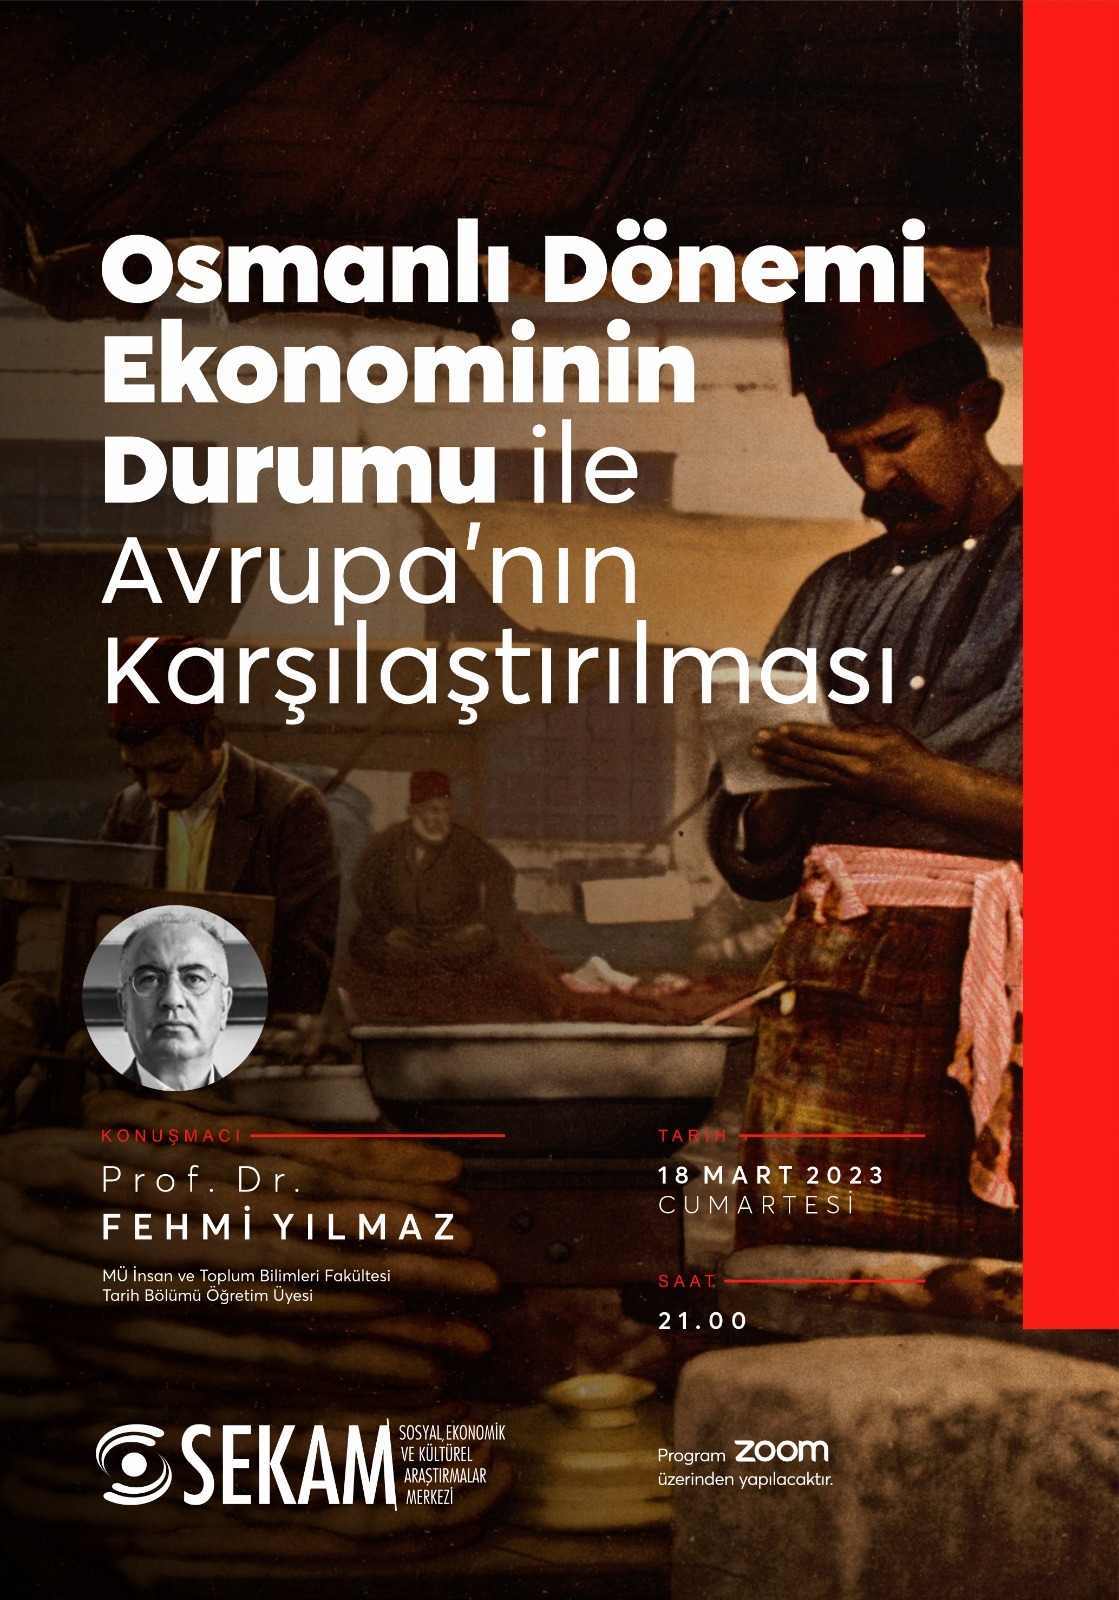 Osmanlı Dönemi Ekonominin Durumu ile Avrupa'nın Karşılaştırılması